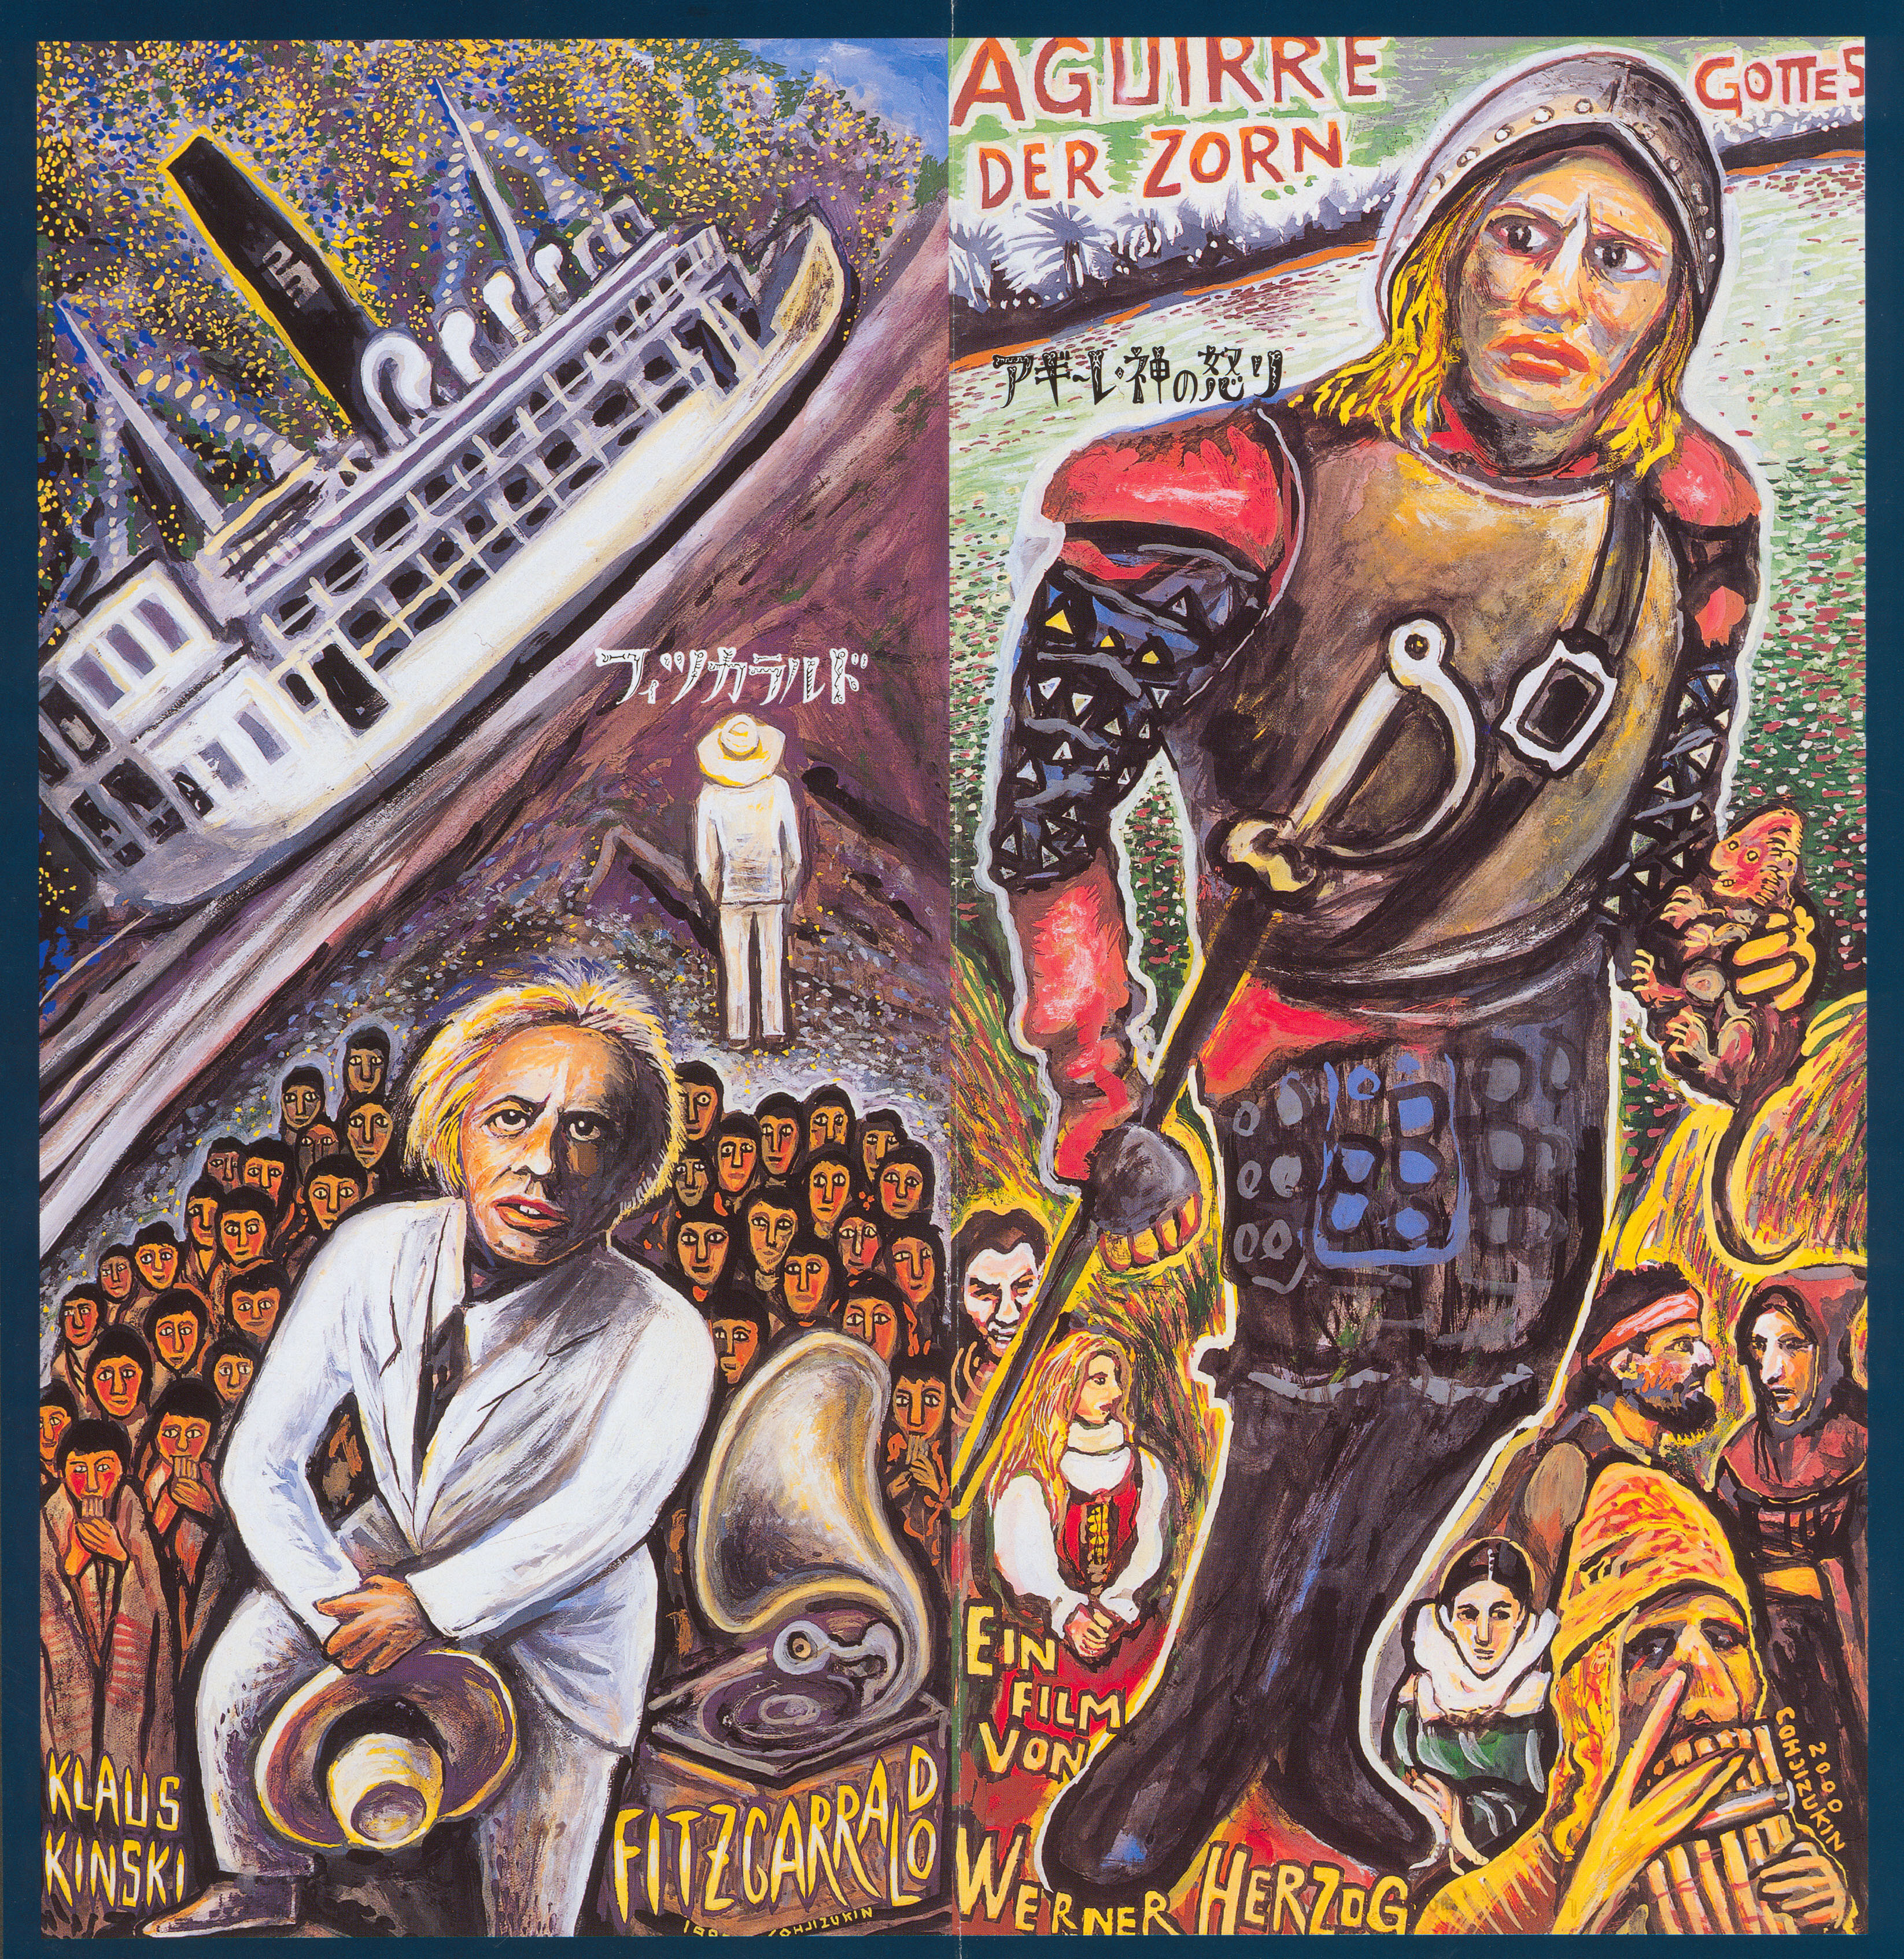 Агирре, гнев божий (Aguirre, the Wrath of God, 1972), режиссёр Вернер Херцог, иллюстрированный постер к фильму (Япония, 1990 год)